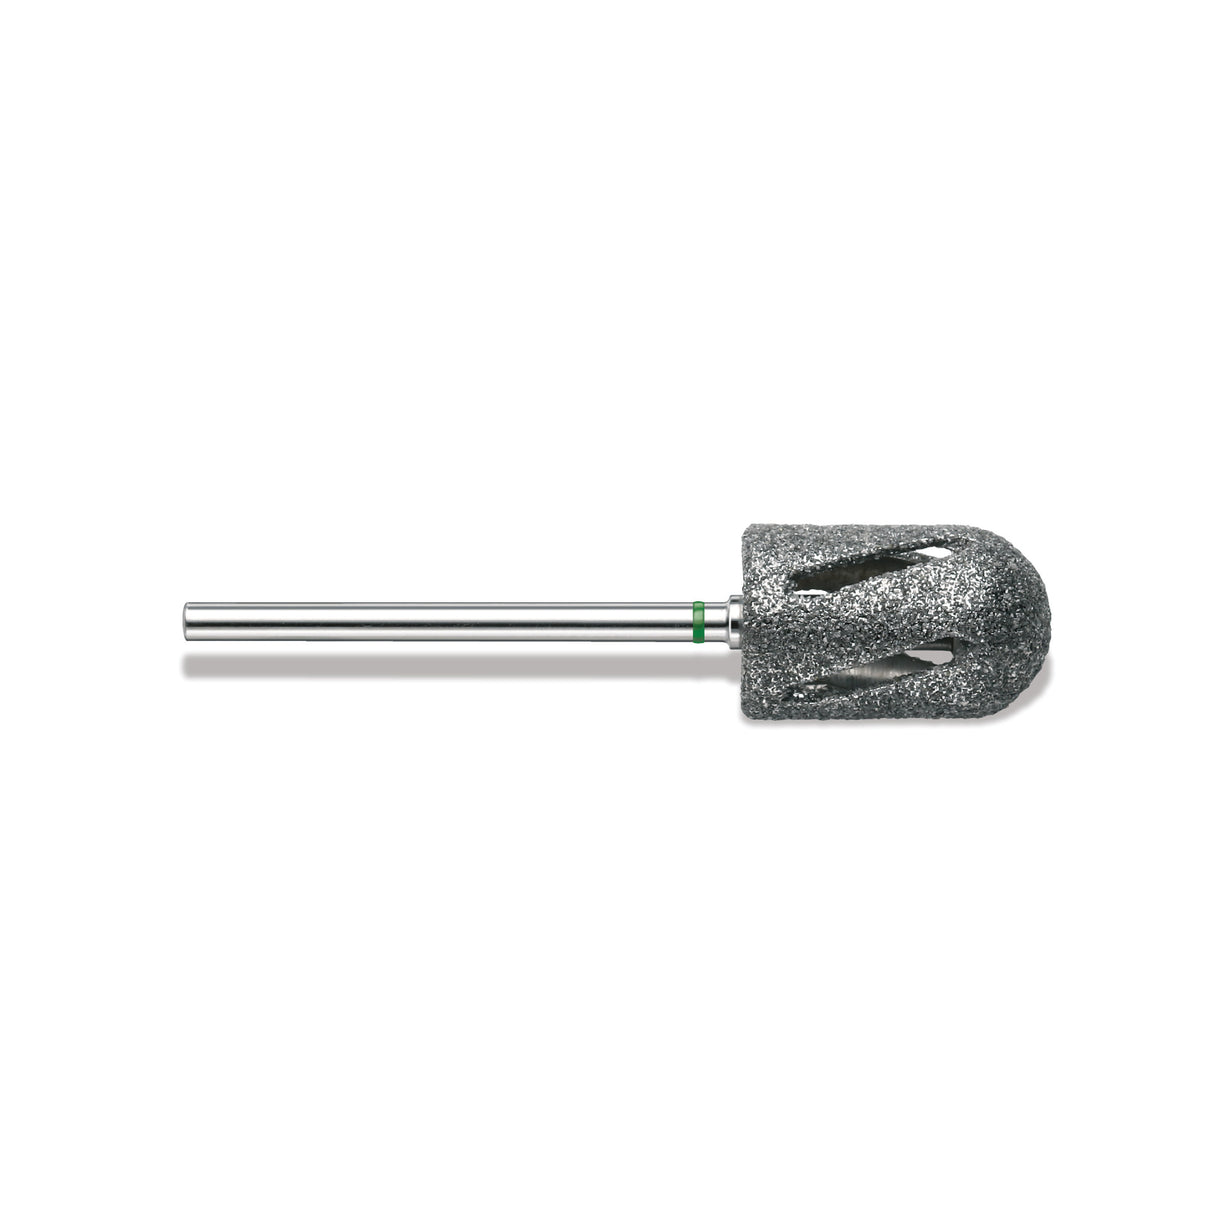 Diamond cutter, DIATWISTER coarse U/min 10.000, Ø11.5mm